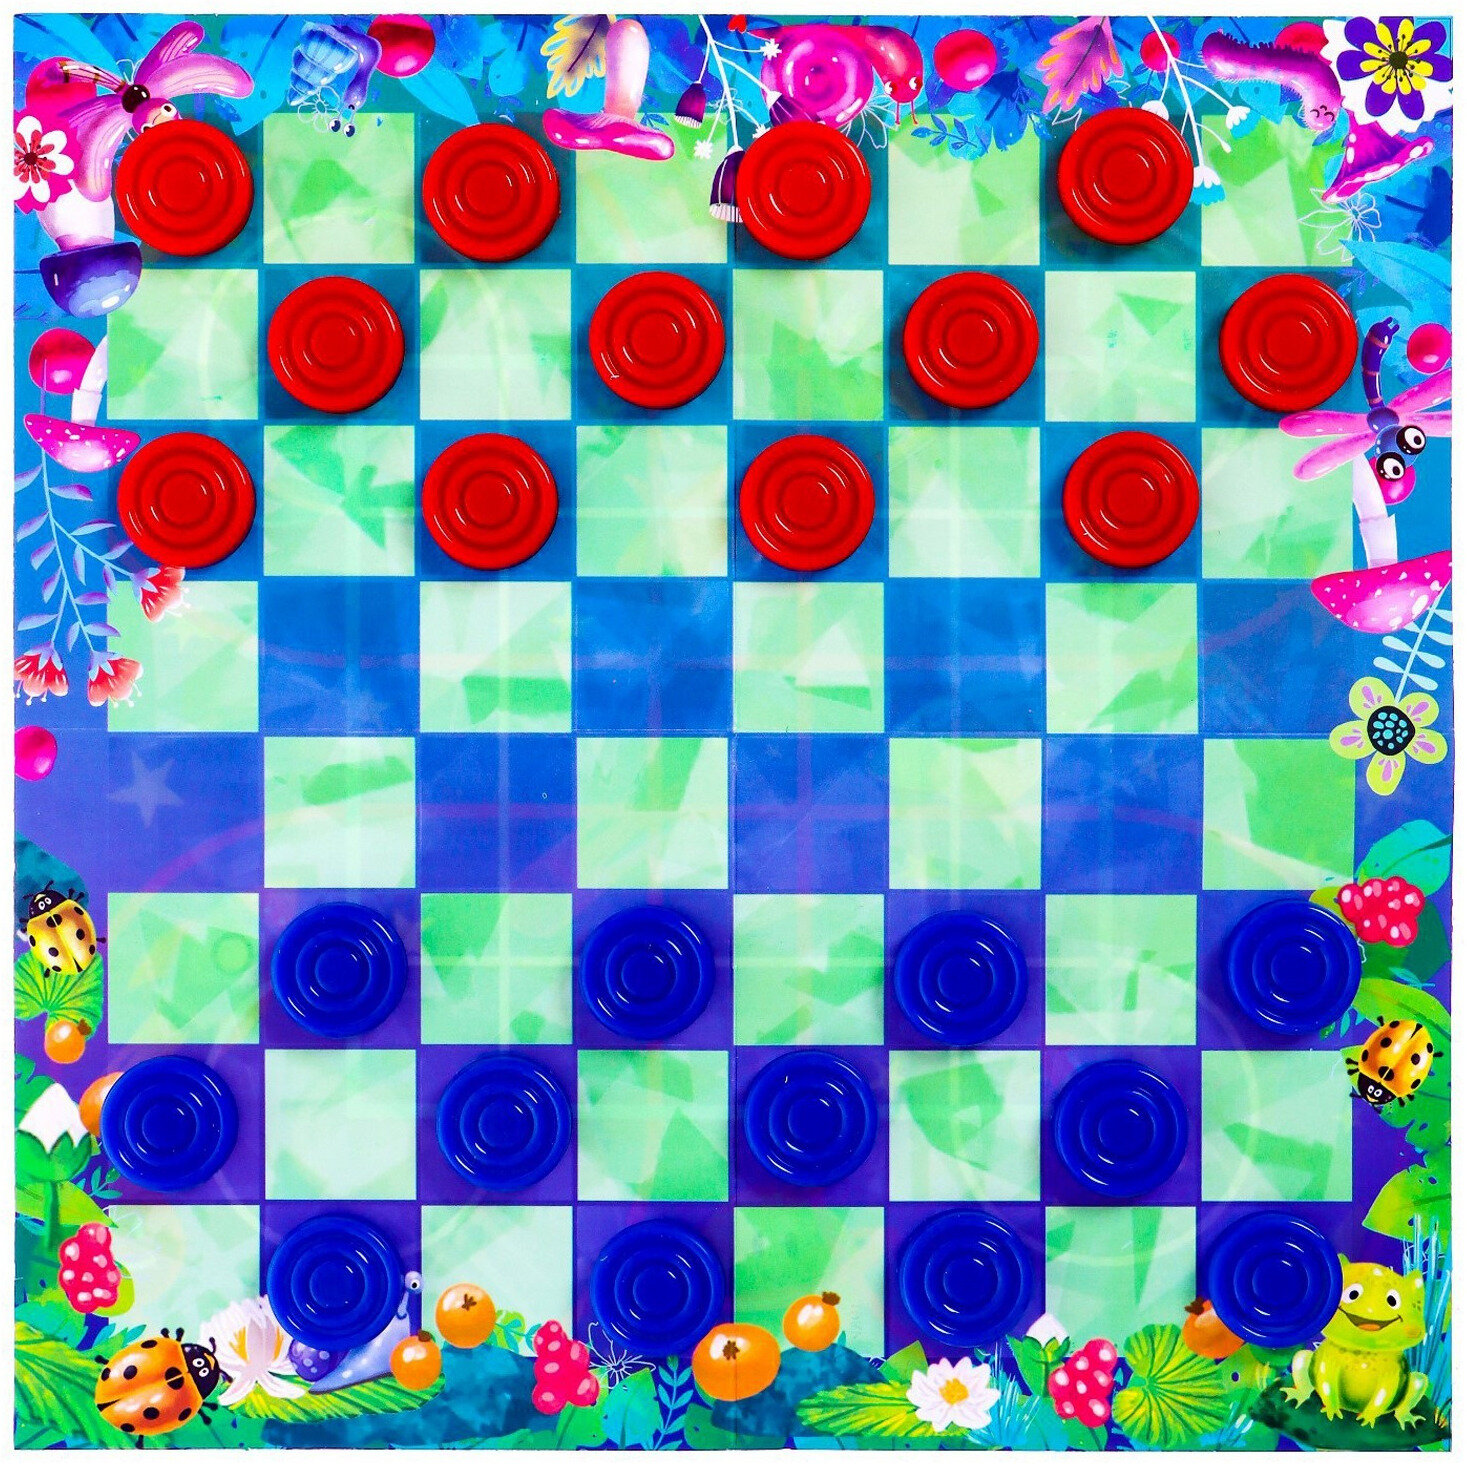 Настольная игра стратегическая 2 в 1 "Шашки" детские + "Суракарта", двустороннее поле и цветные шашки, набор игр